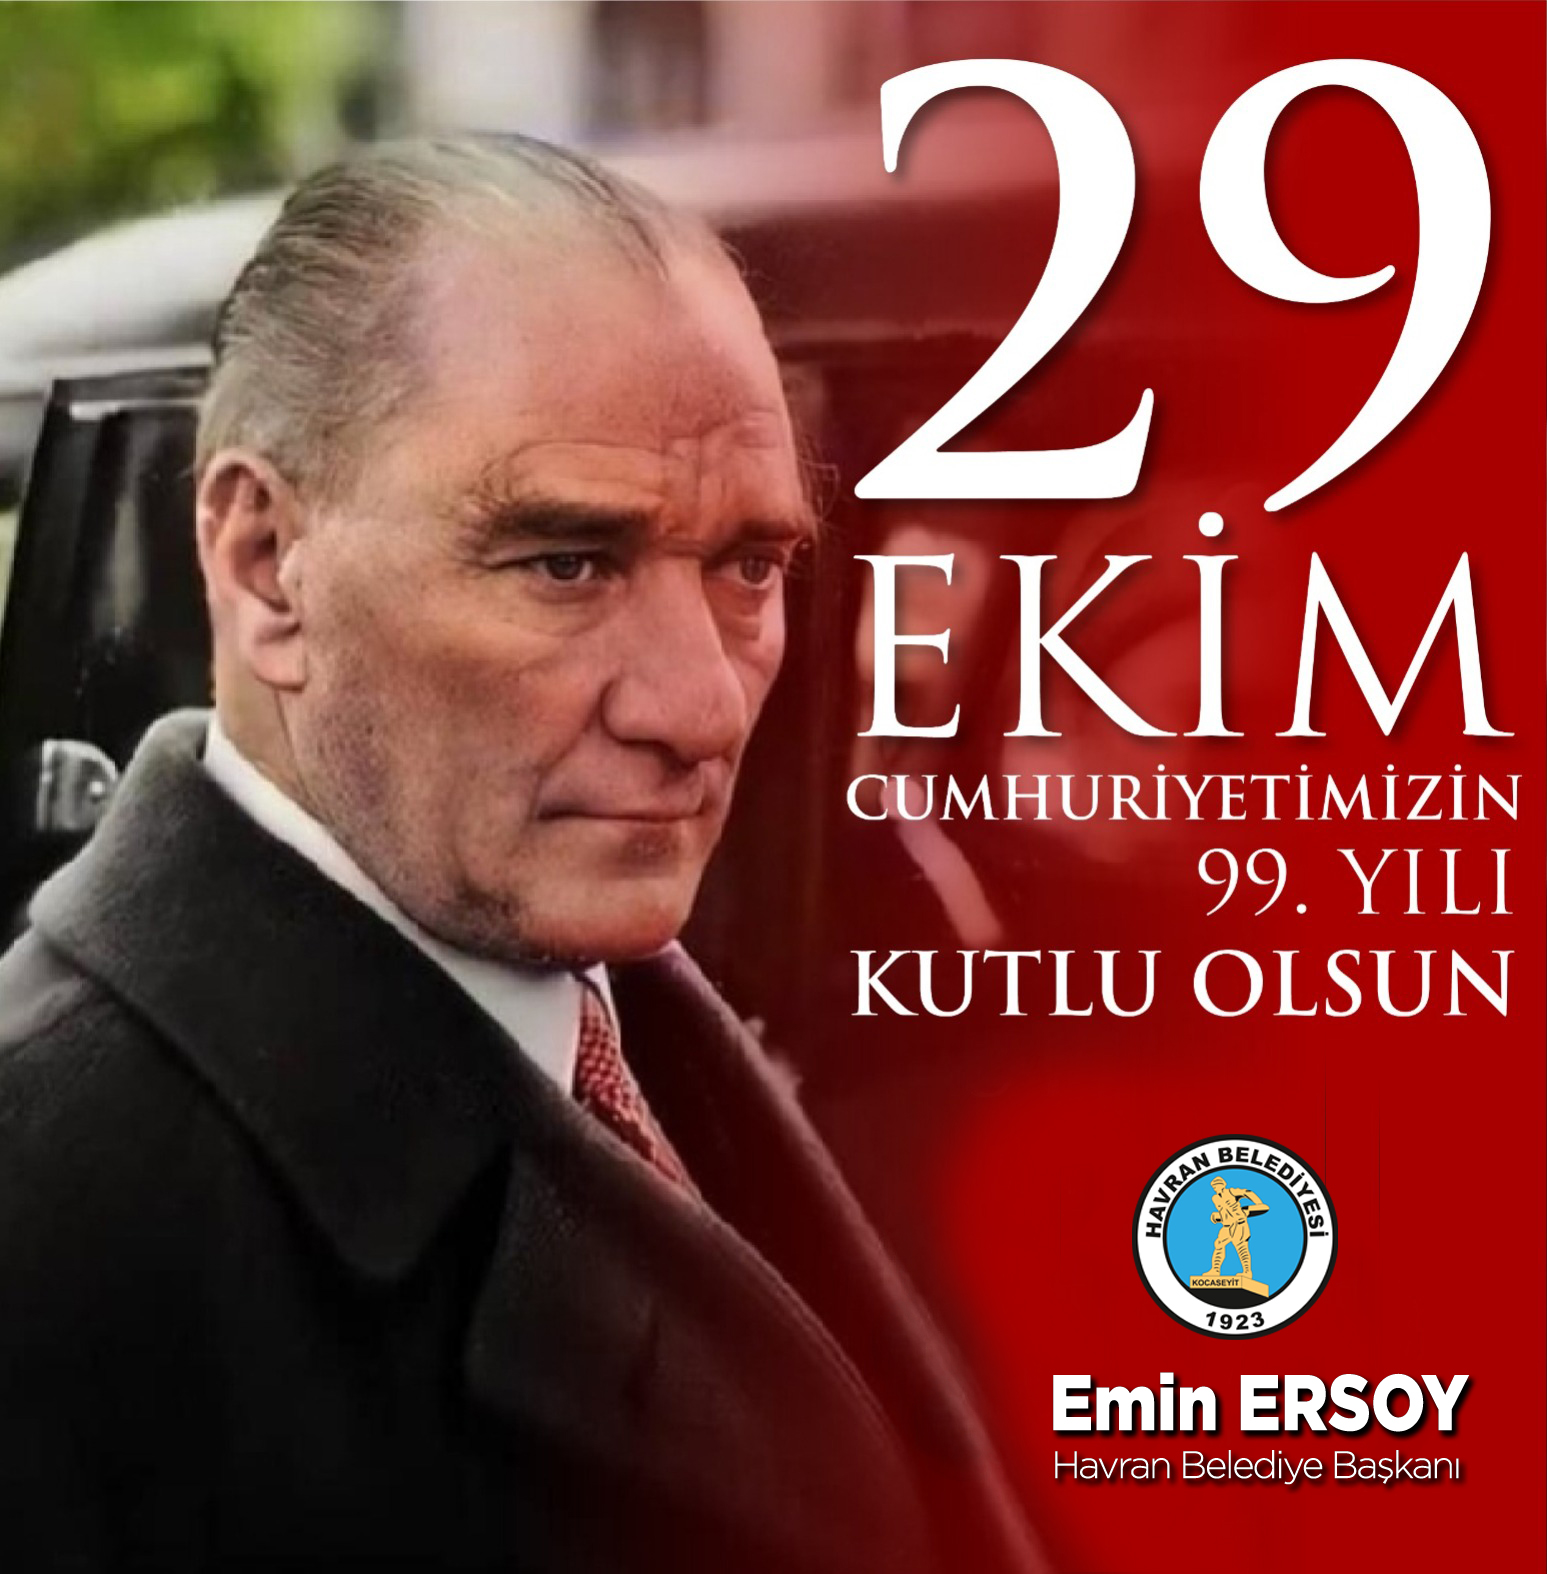 Emin Ersoy’un 29 Ekim Cumhuriyet Bayramı Kutlama İlanı